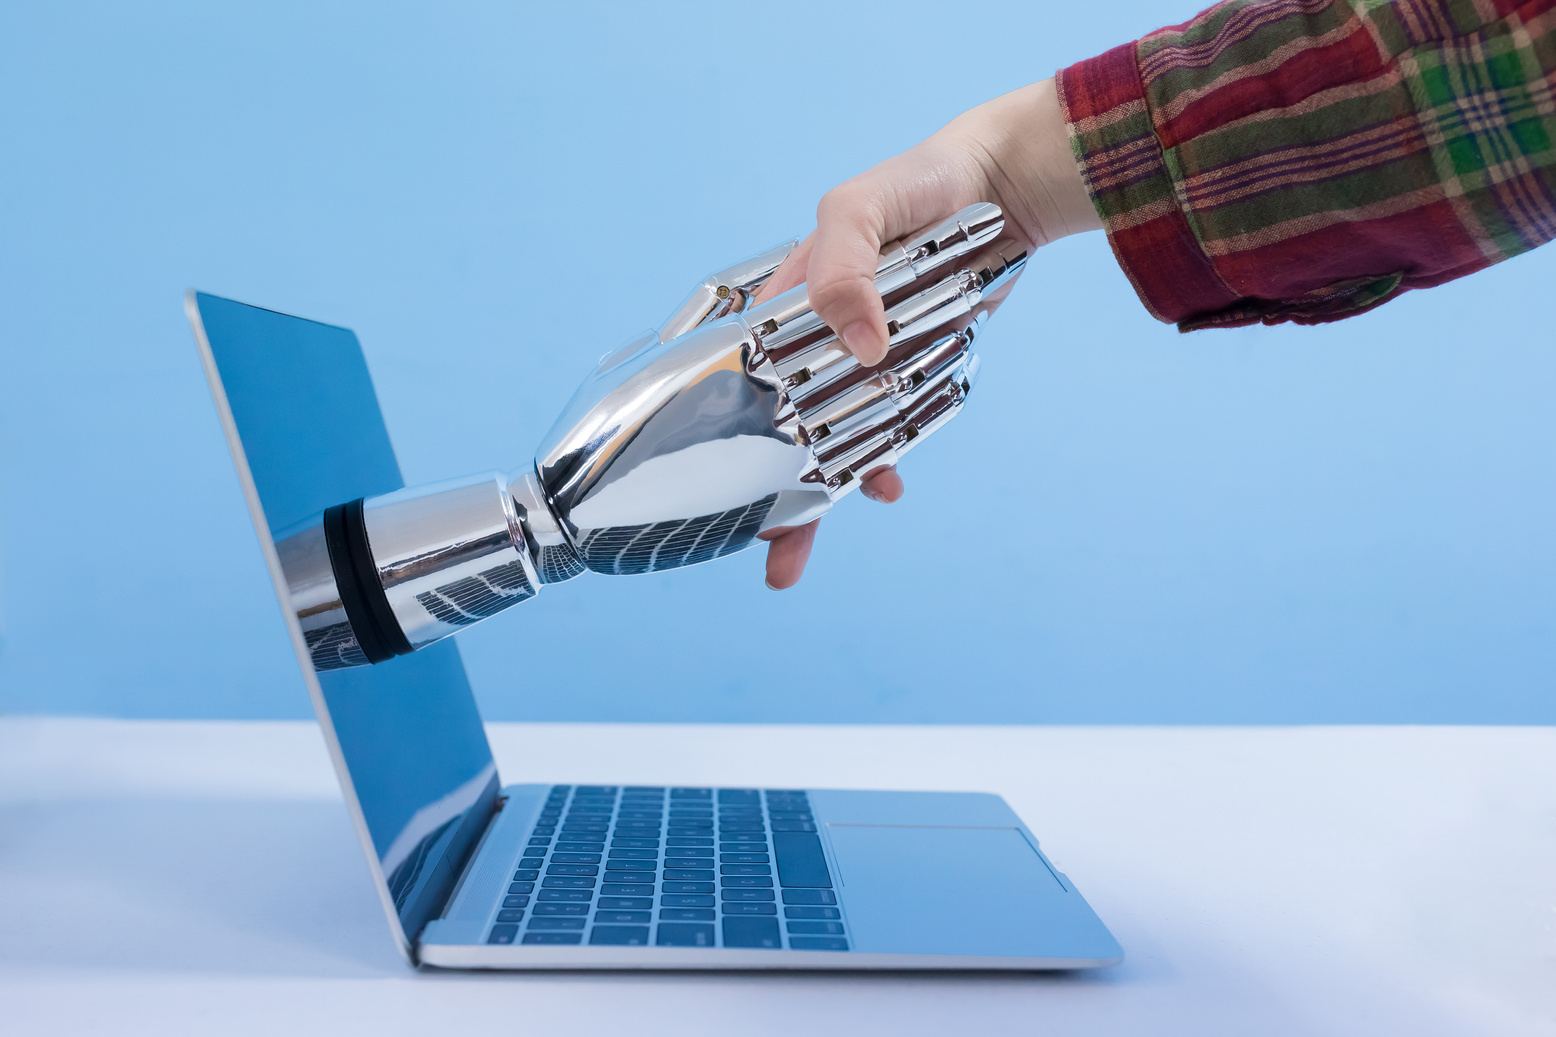 Shake with Robot Hand